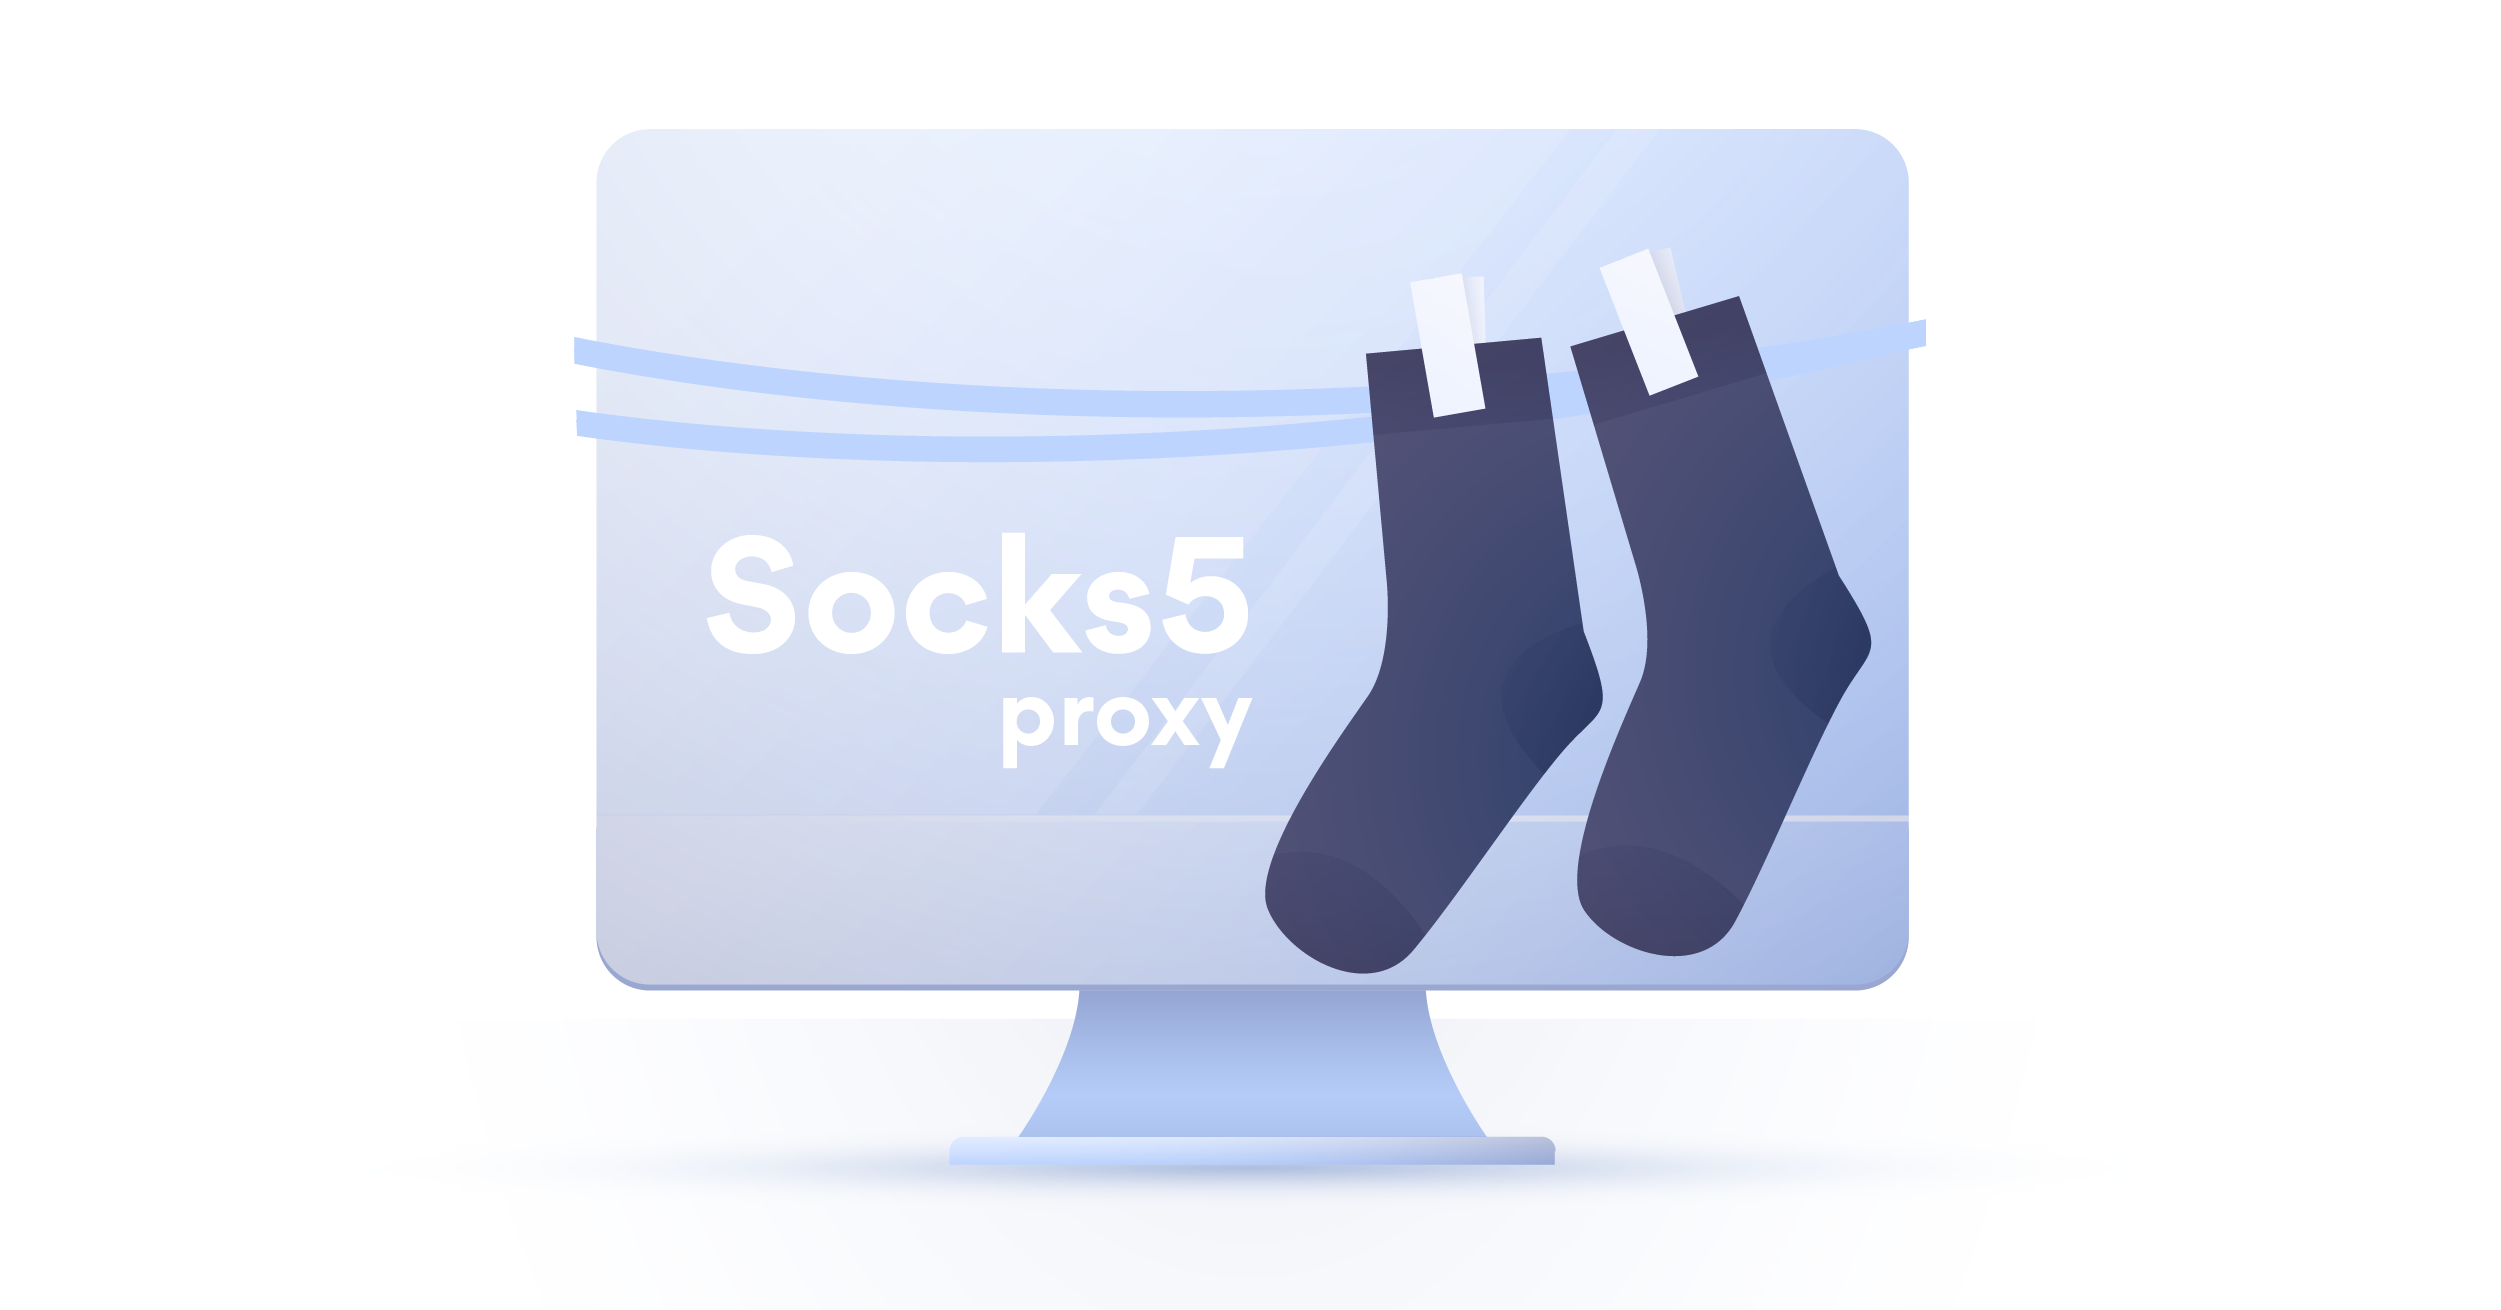 acquista socks5 proxy con bitcoin come il commercio bitcoin con usd